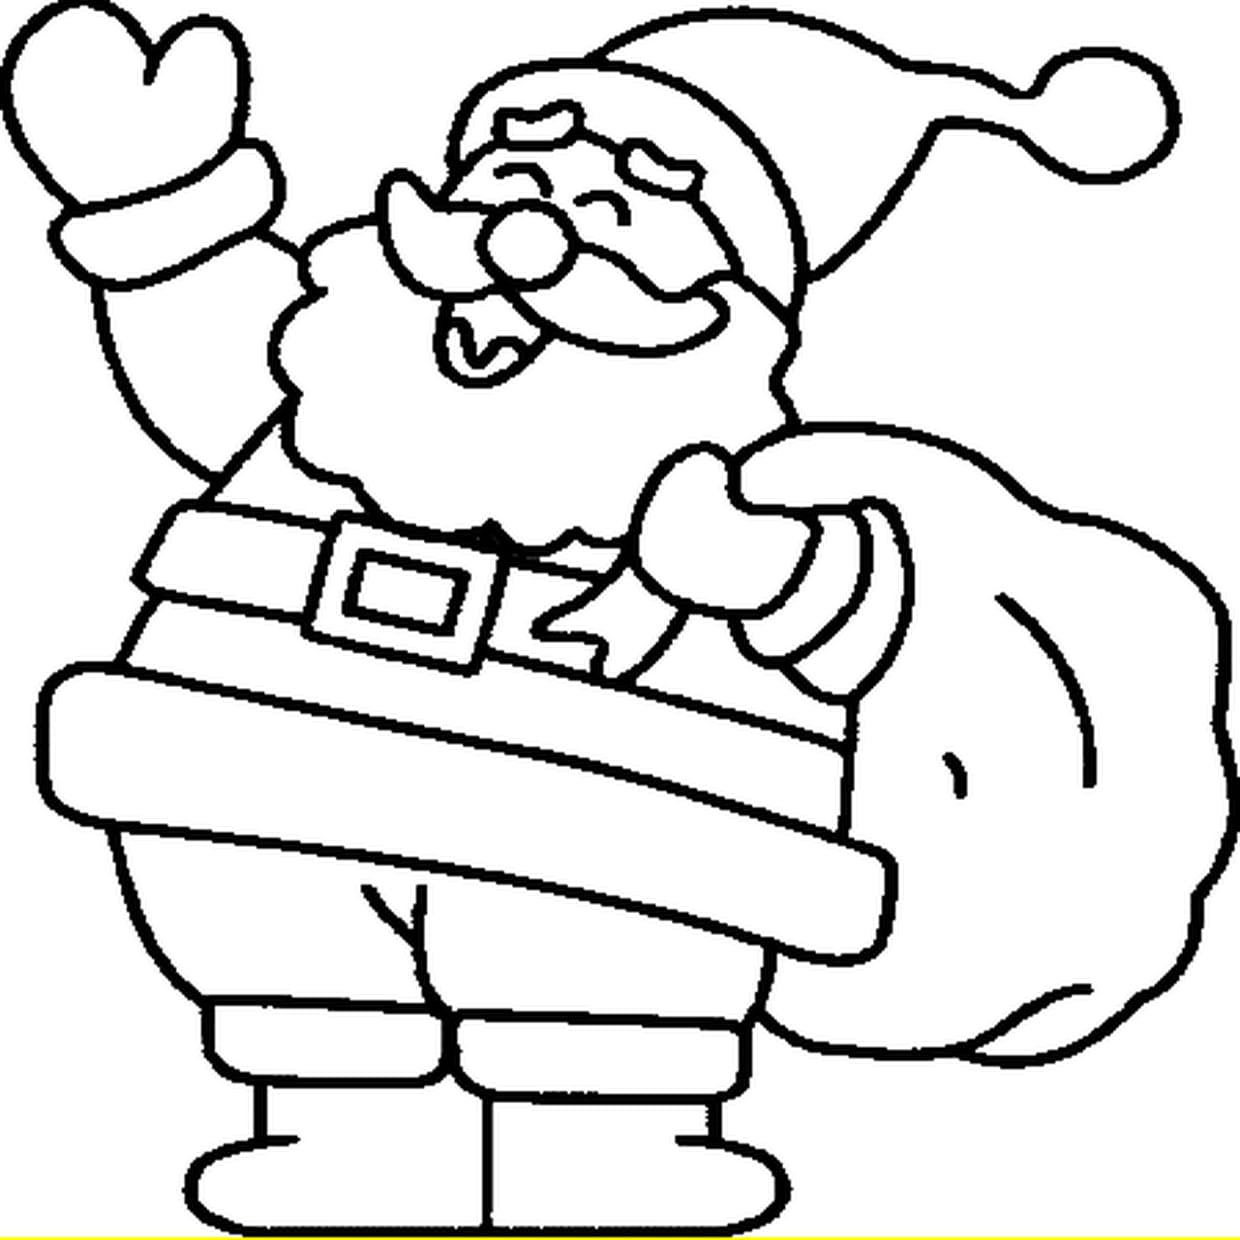 Coloriage Le Père Noël En Ligne Gratuit À Imprimer concernant Dessin A Colorier De Noel Gratuit A Imprimer